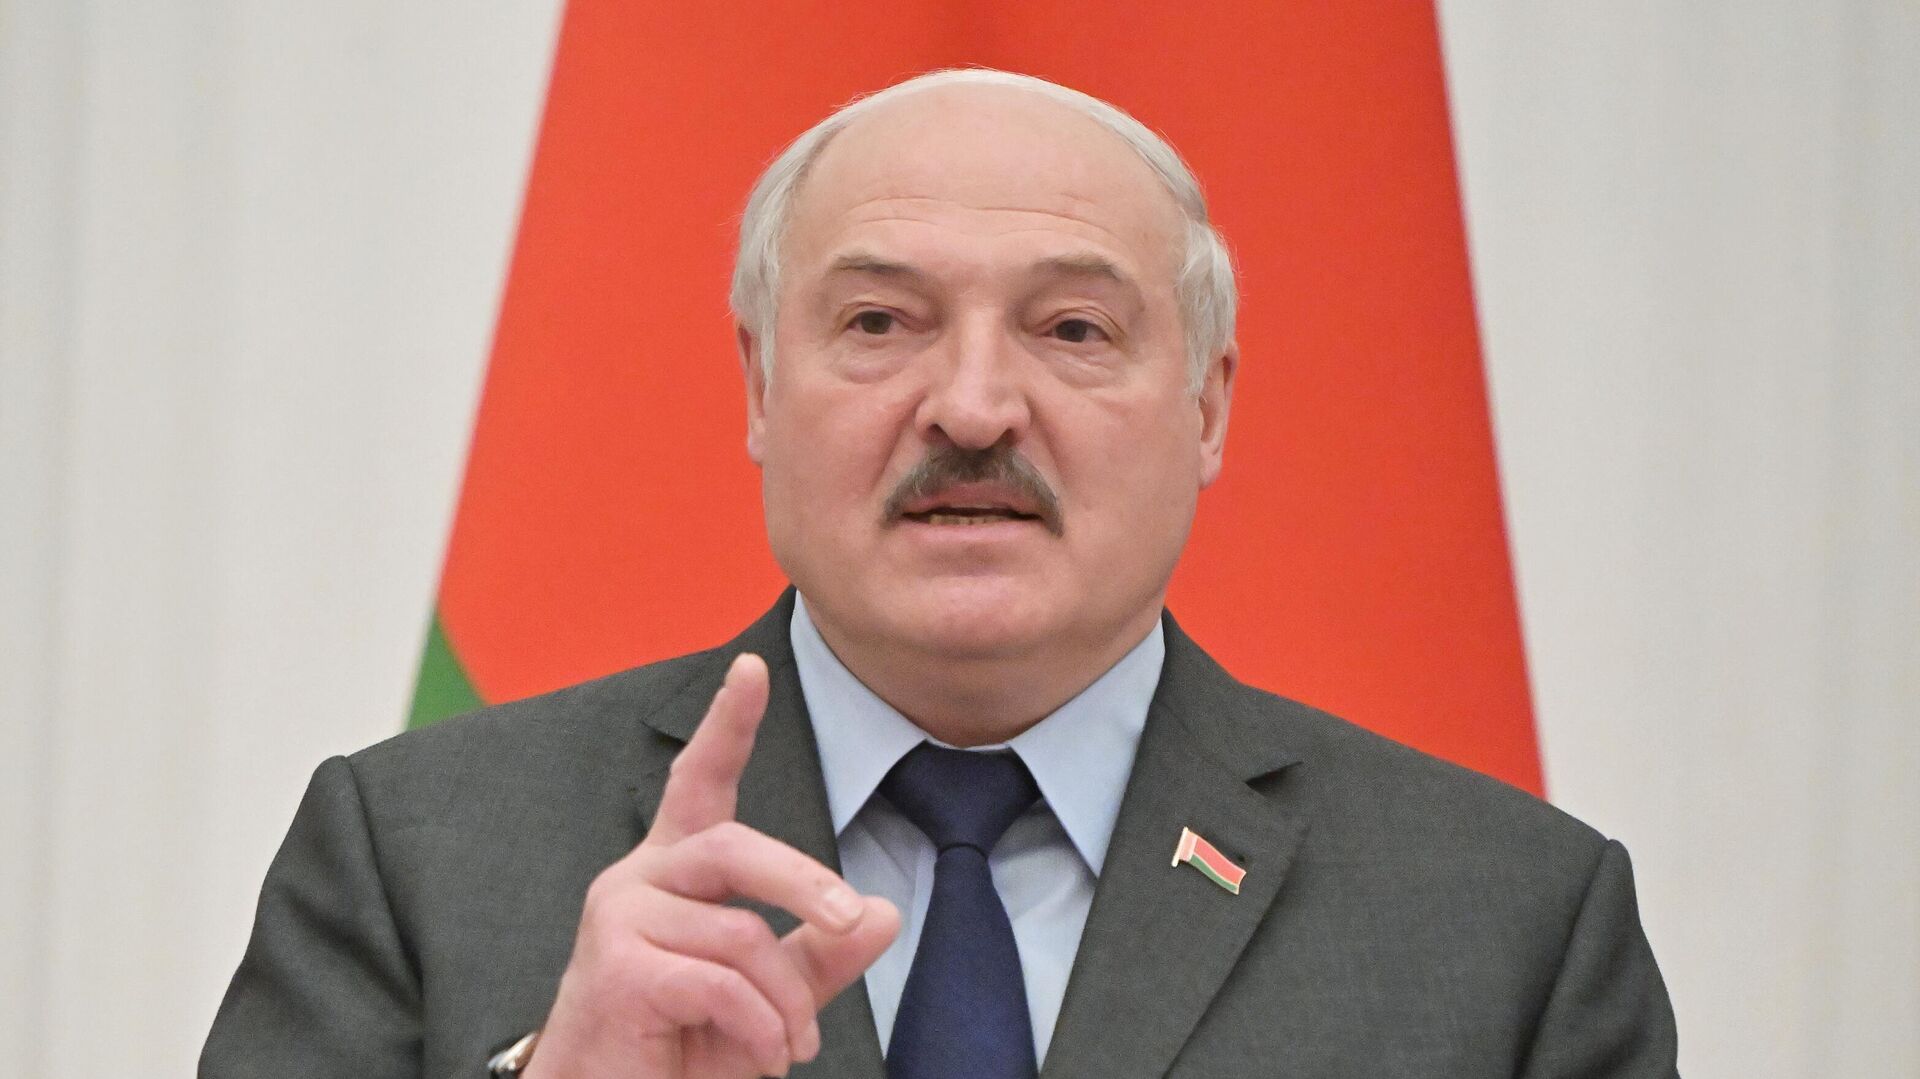 Лукашенко намерен предложить соседним странам план добрососедства и мира